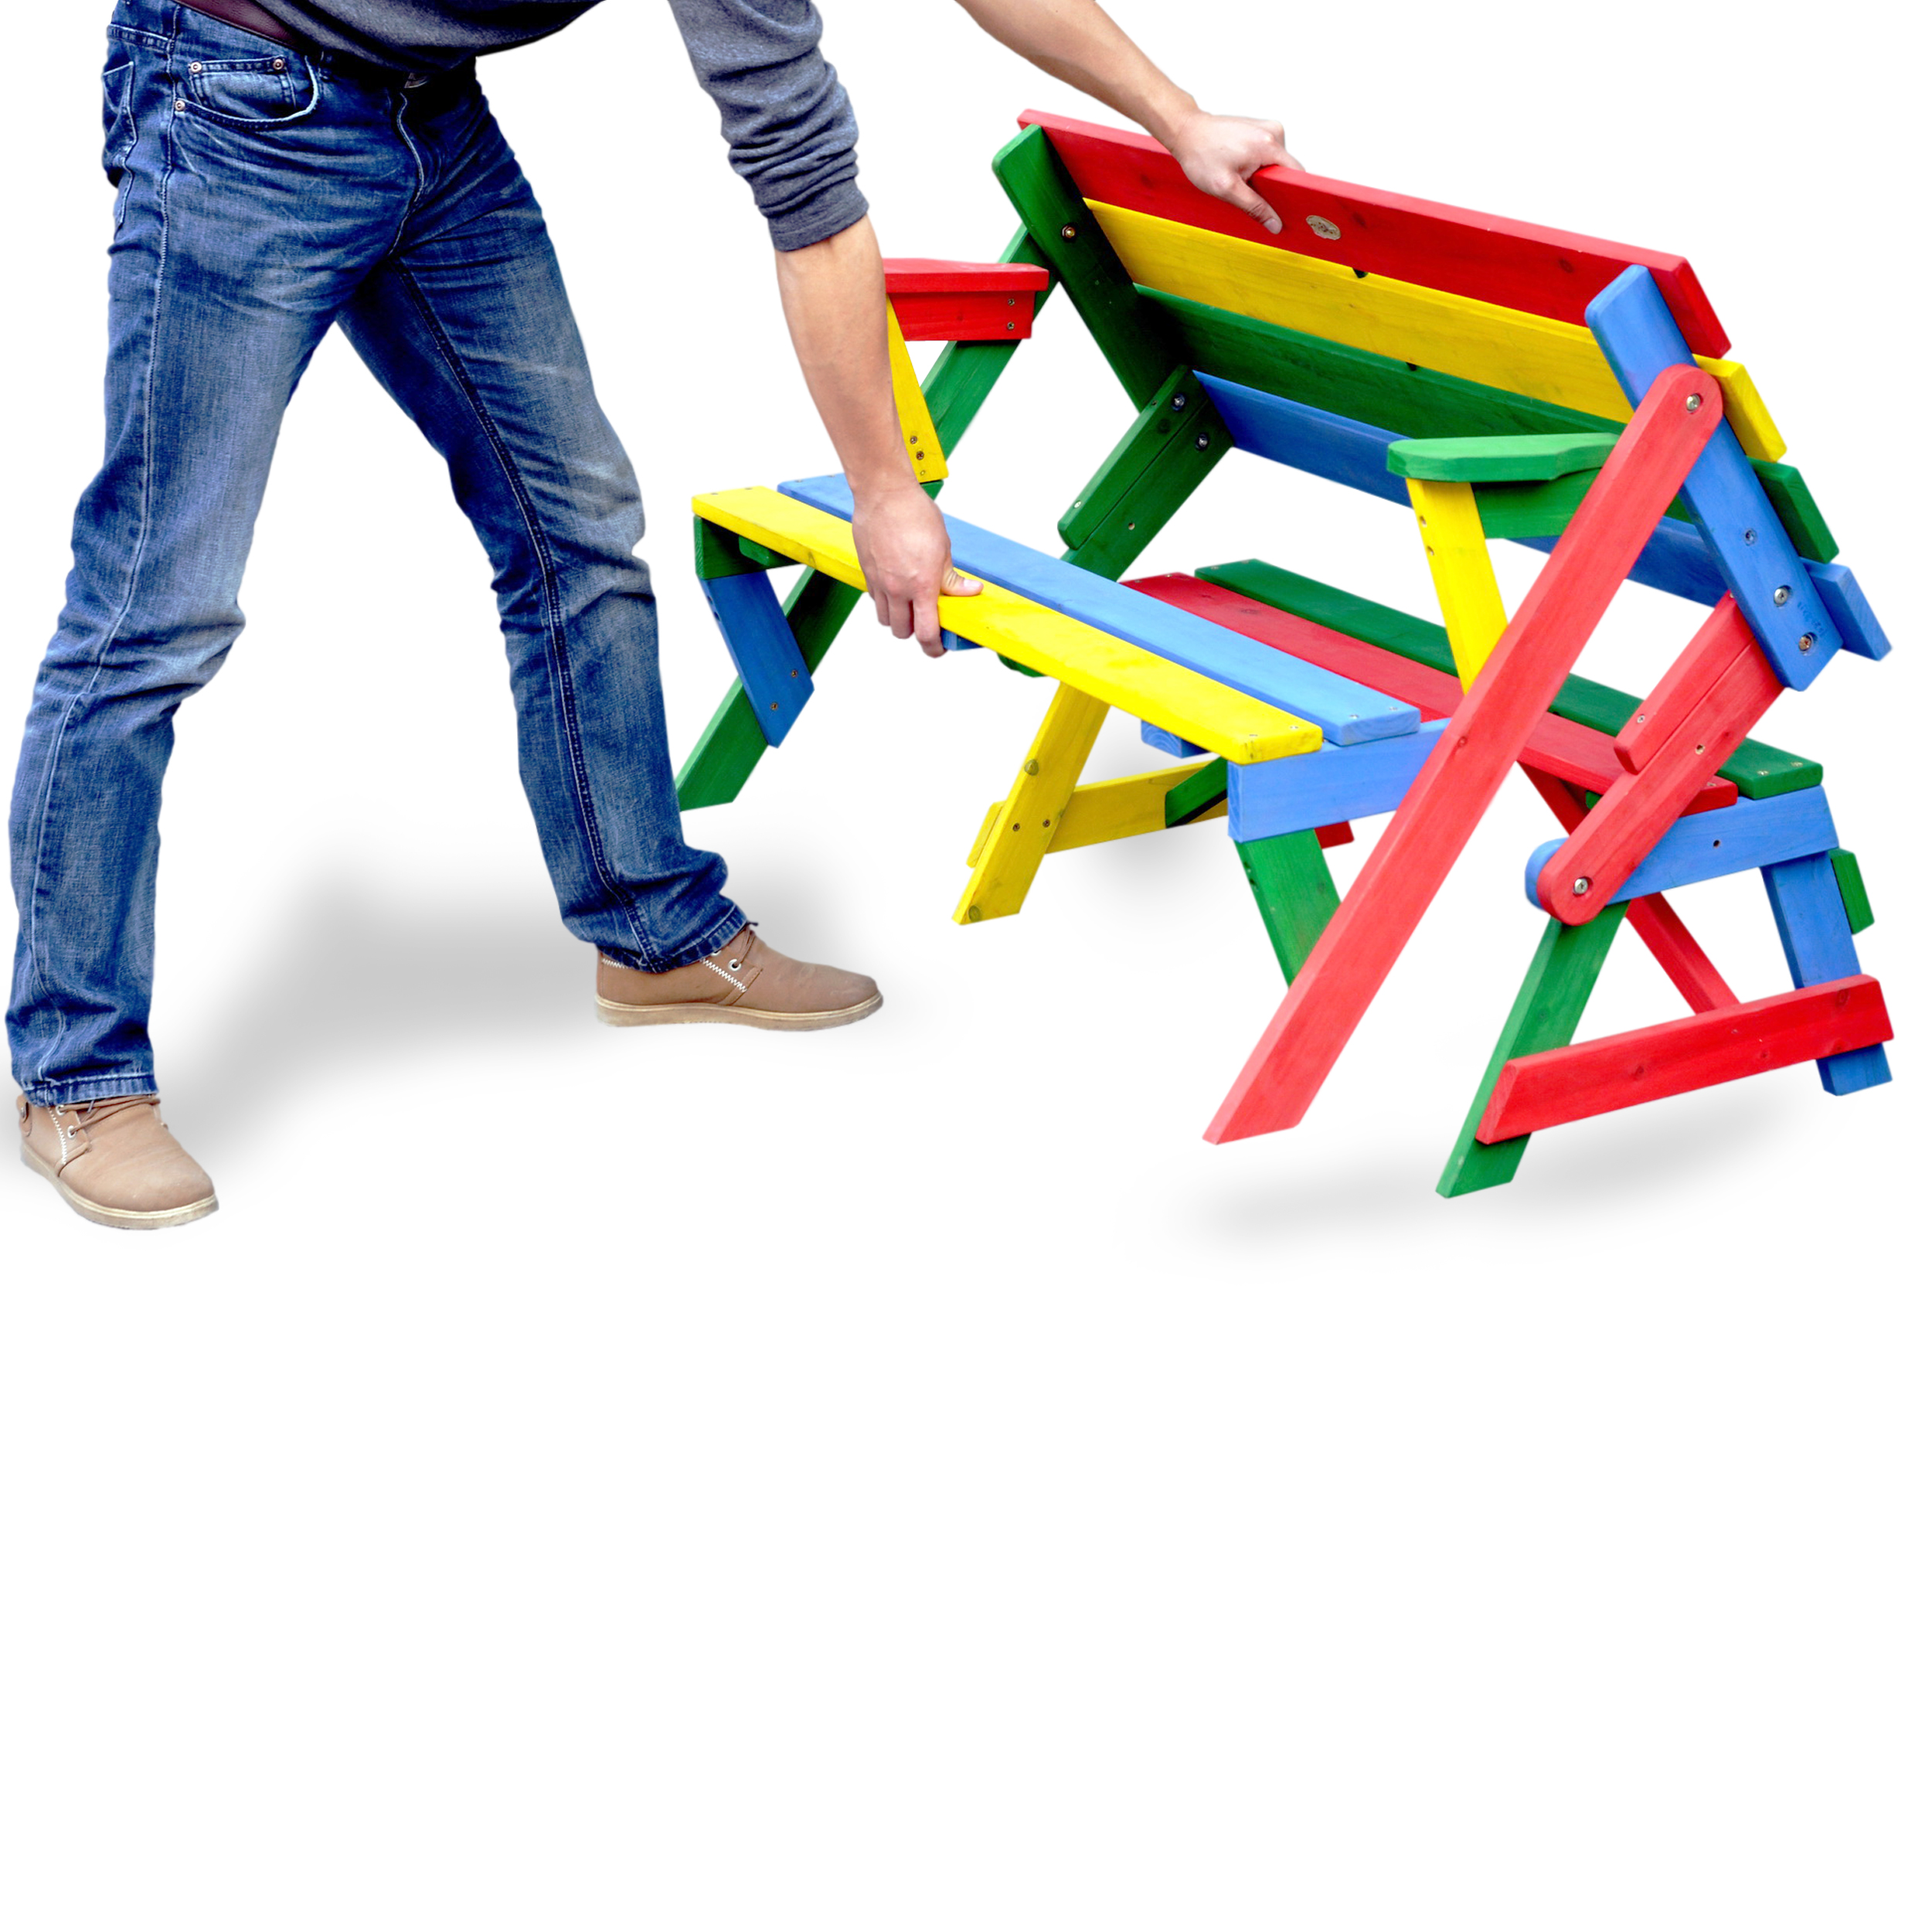 HABAU Kinderpicknickbank in rot, grün, gelb und blau - Anwendungsbeispiel zum Umklappen